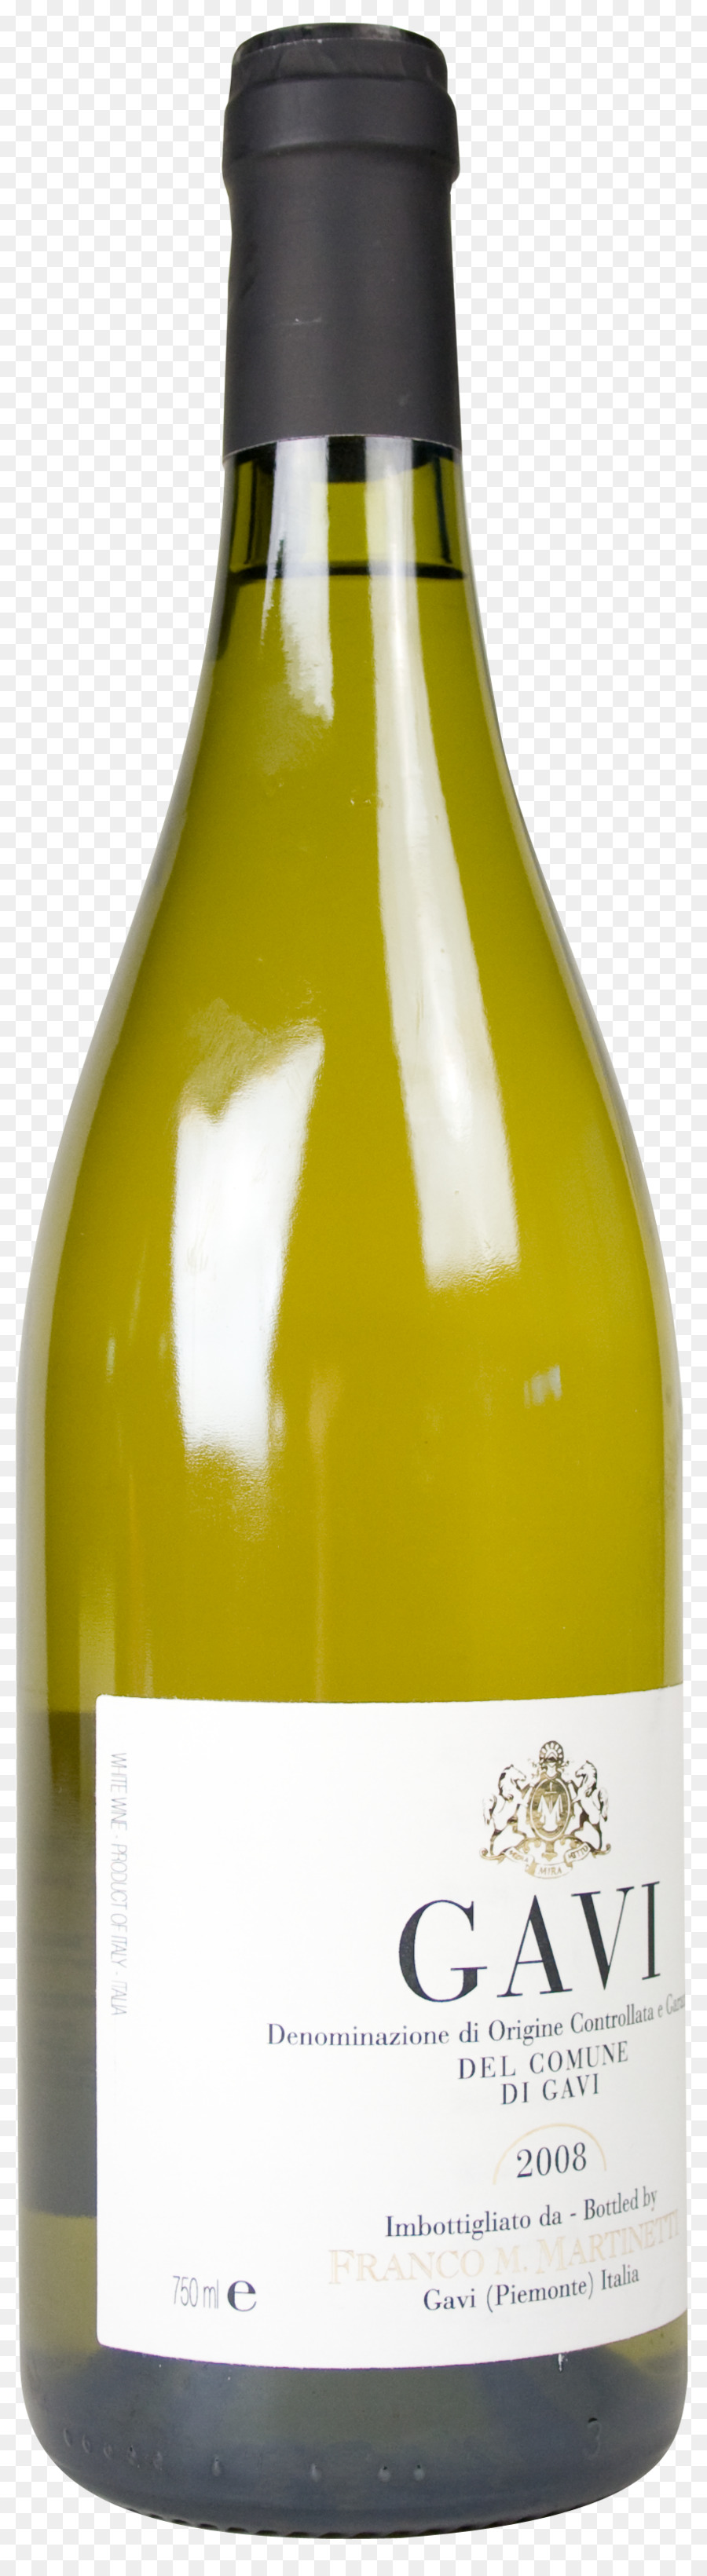 Anggur Putih，Anggur PNG